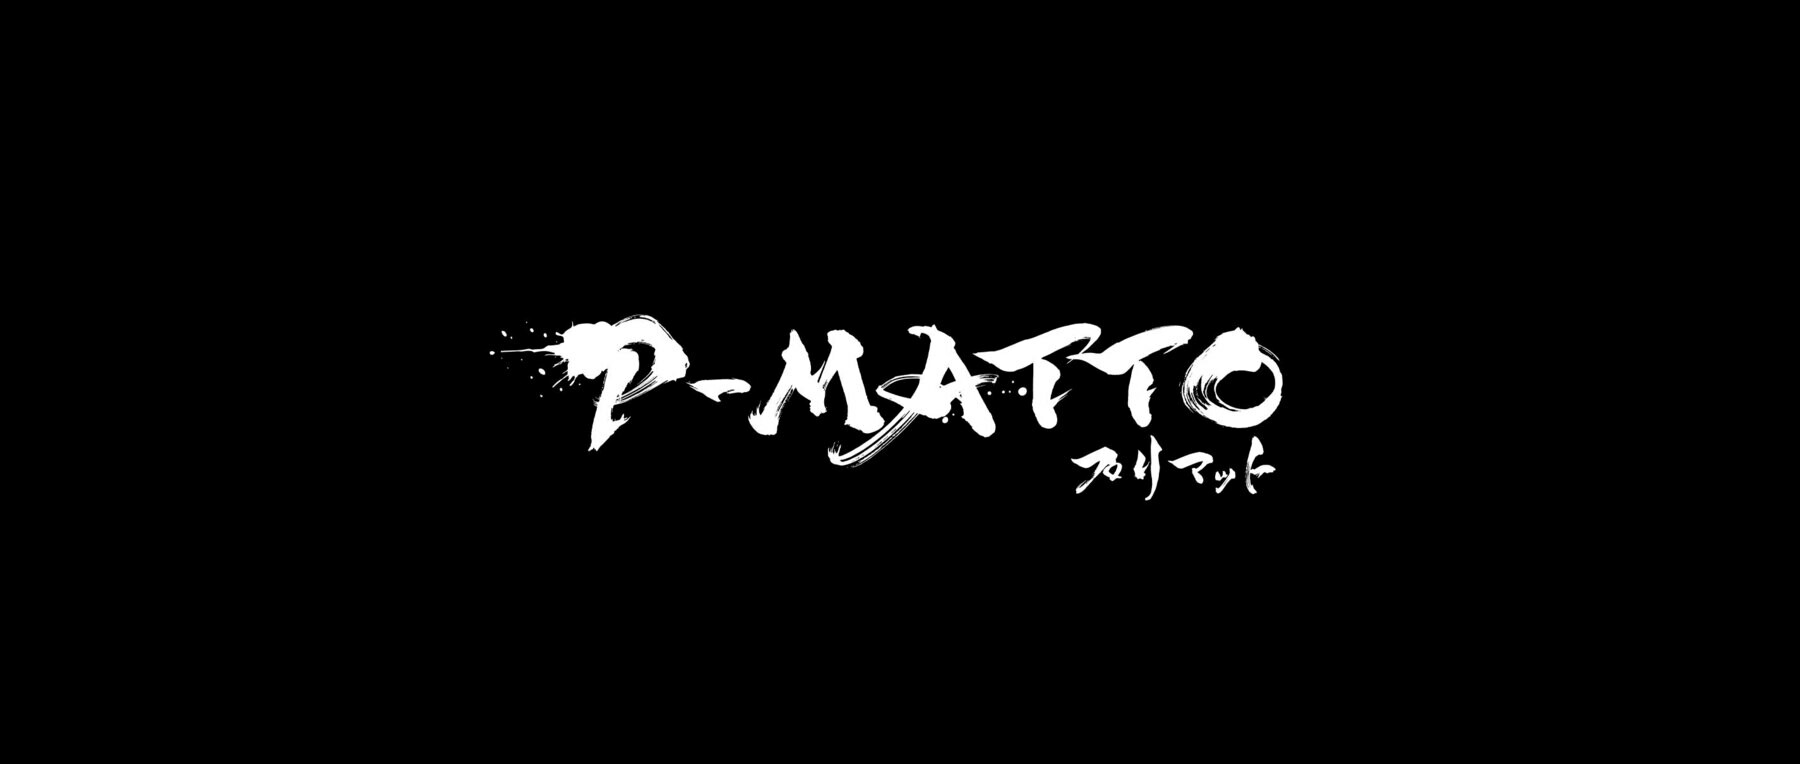 P-MATTO (旧:ダルマット)のカバー画像